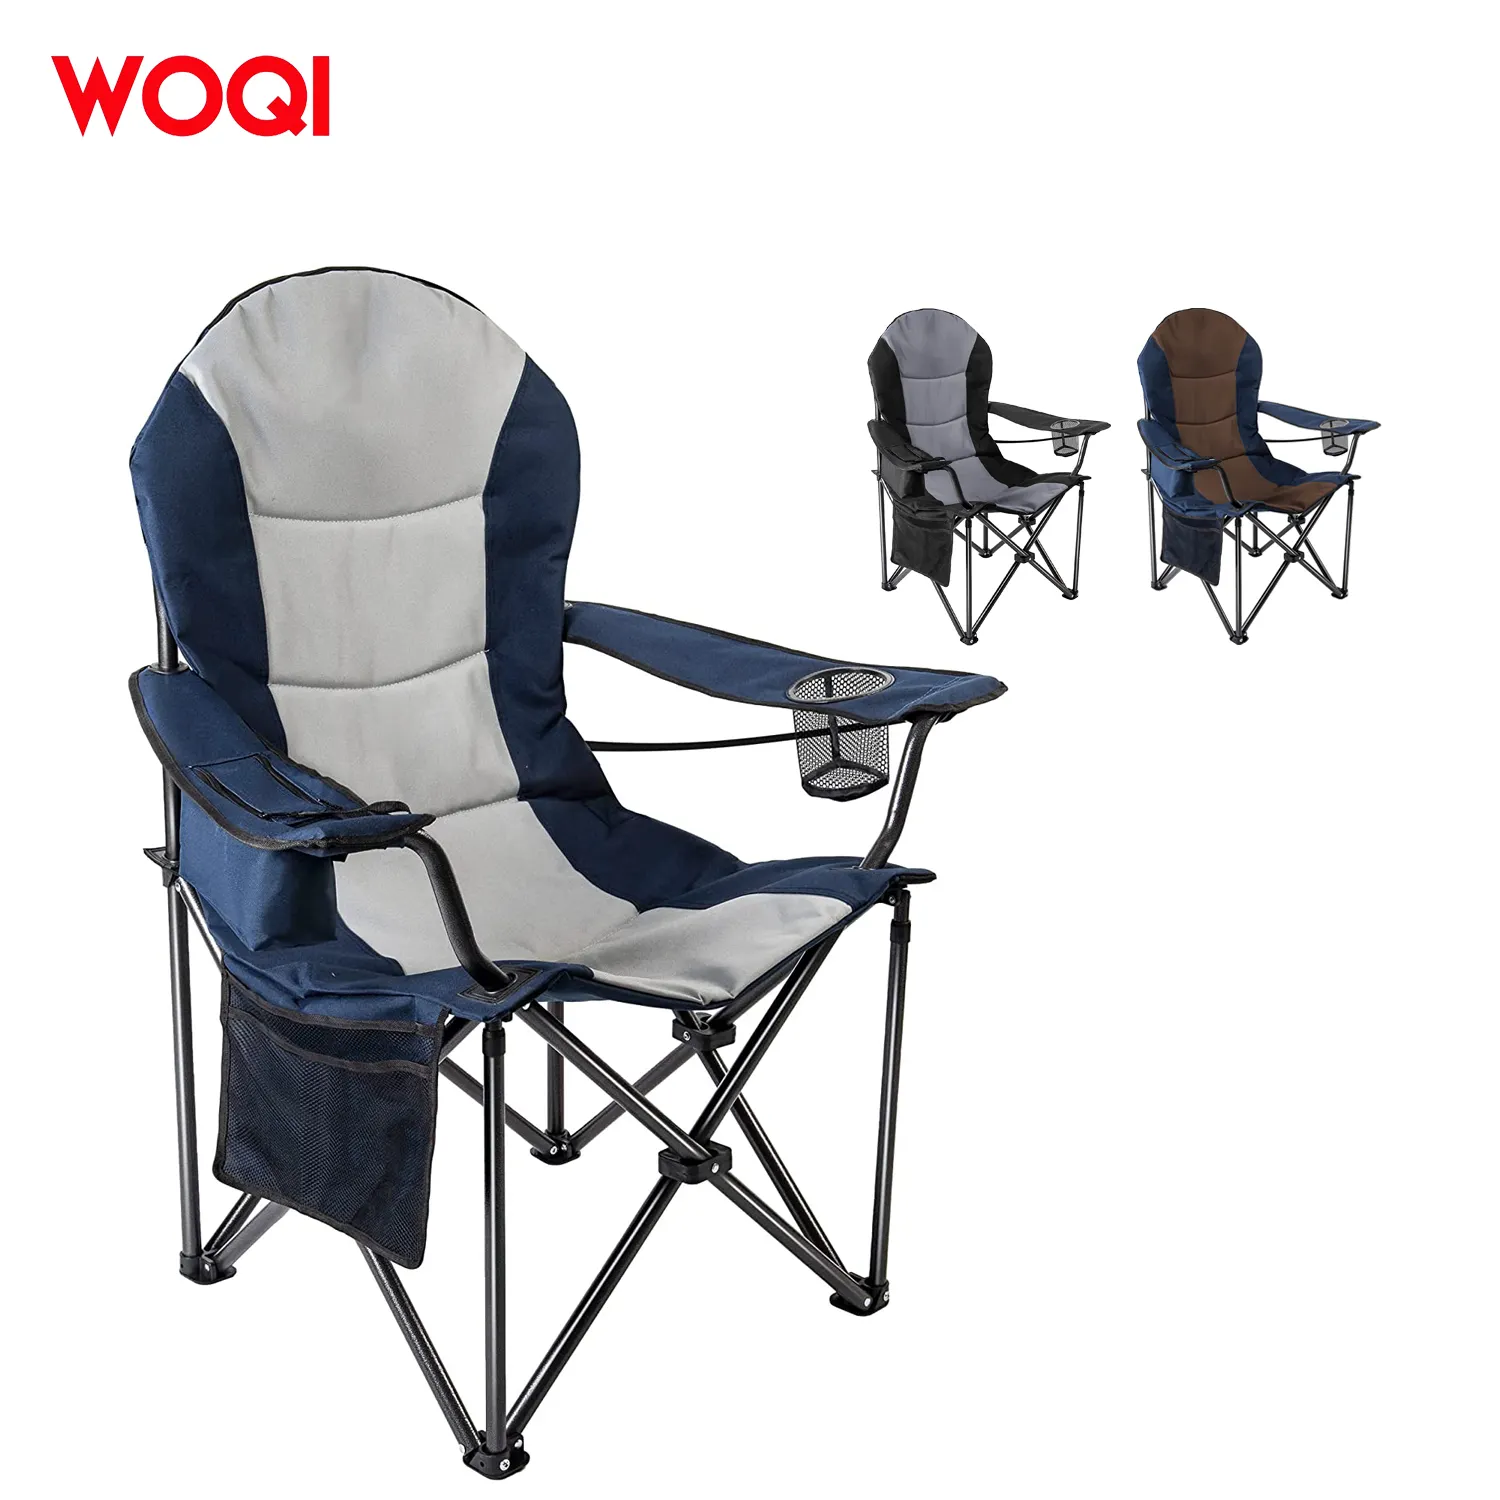 Woqi assento portátil para piquenique, cadeira dobrável com apoio para braço